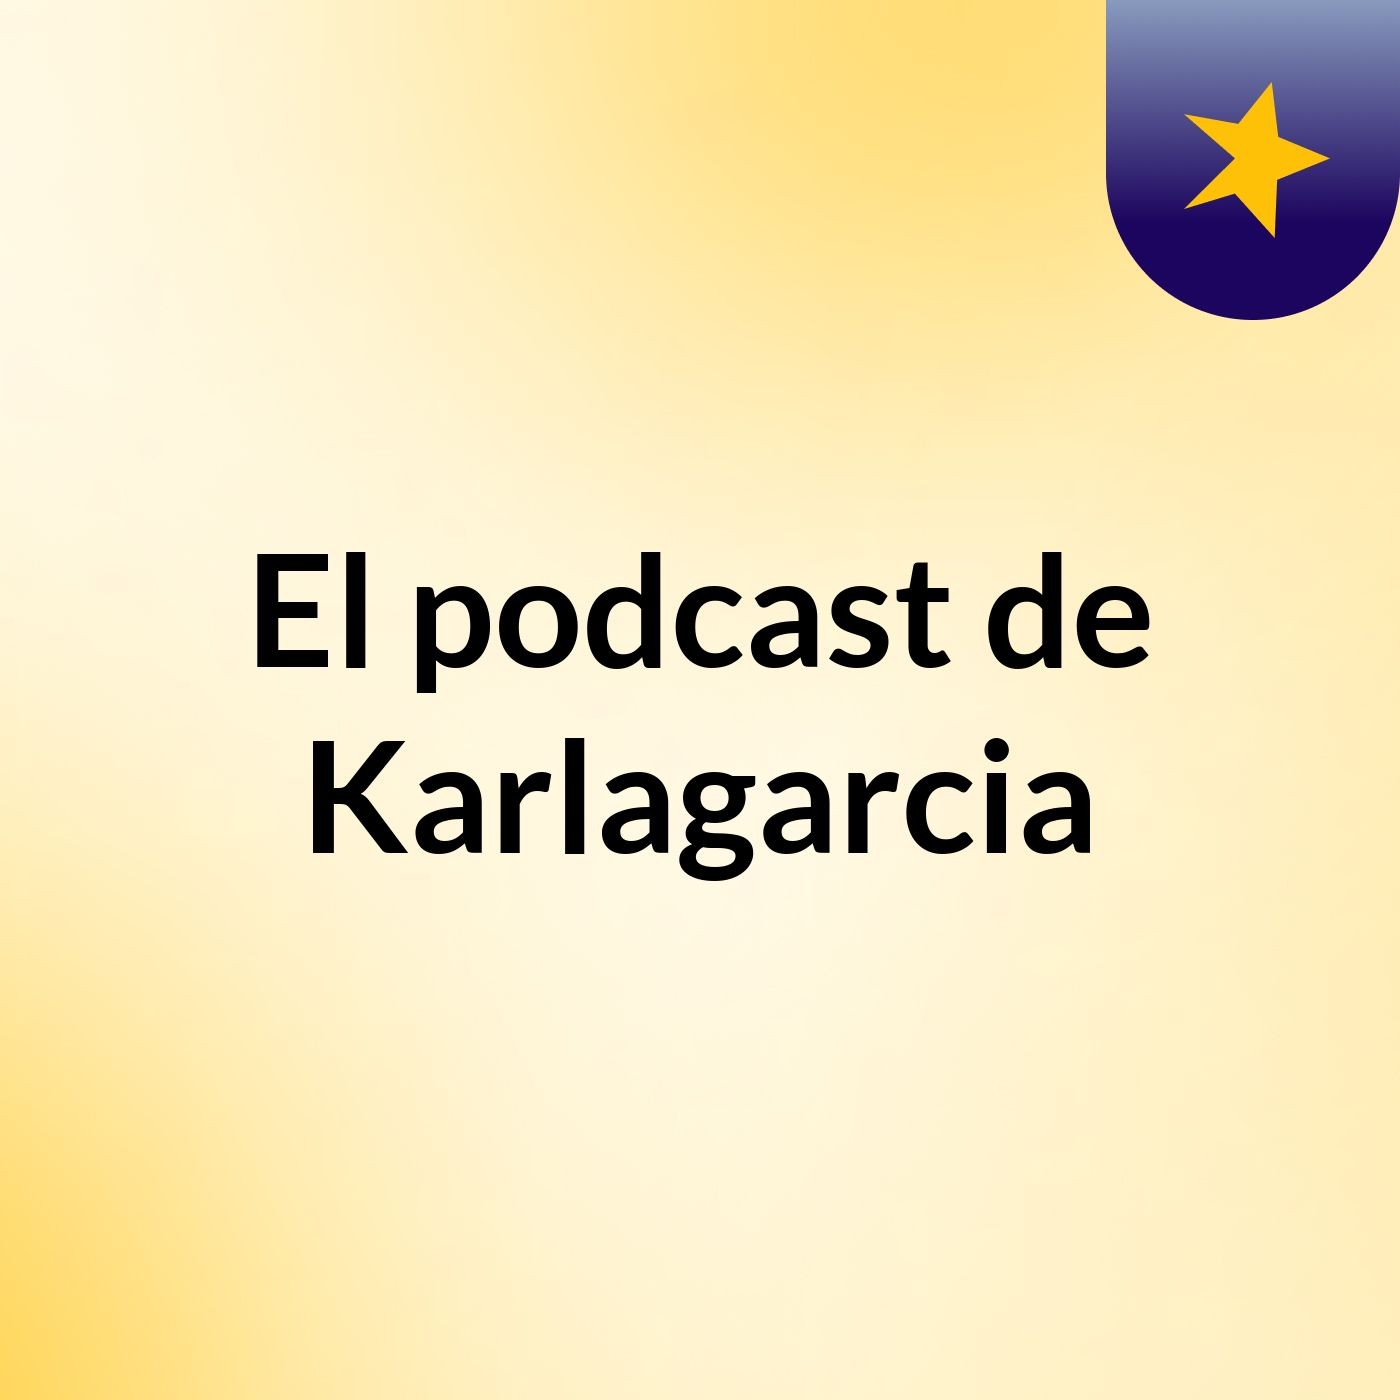 Episodio 2 - El podcast de Karlagarcia